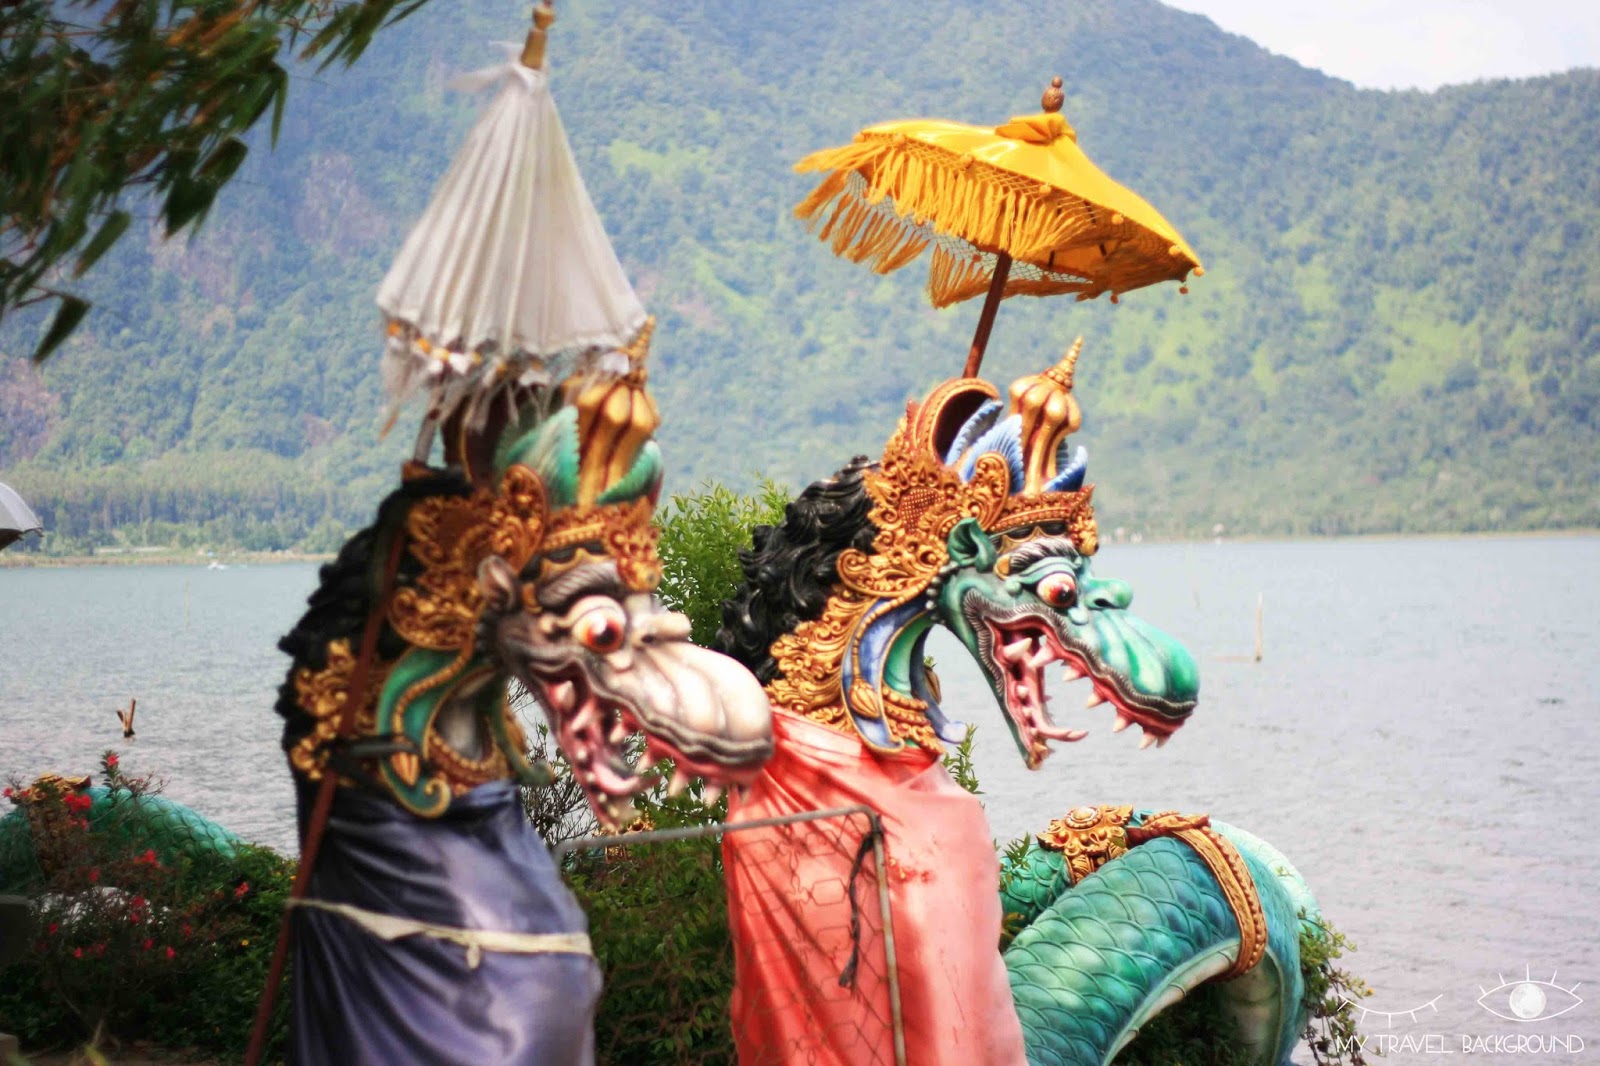 My Travel Background : que visiter dans le Nord de Bali? Le temple de Pura Ulun Danu Bratan